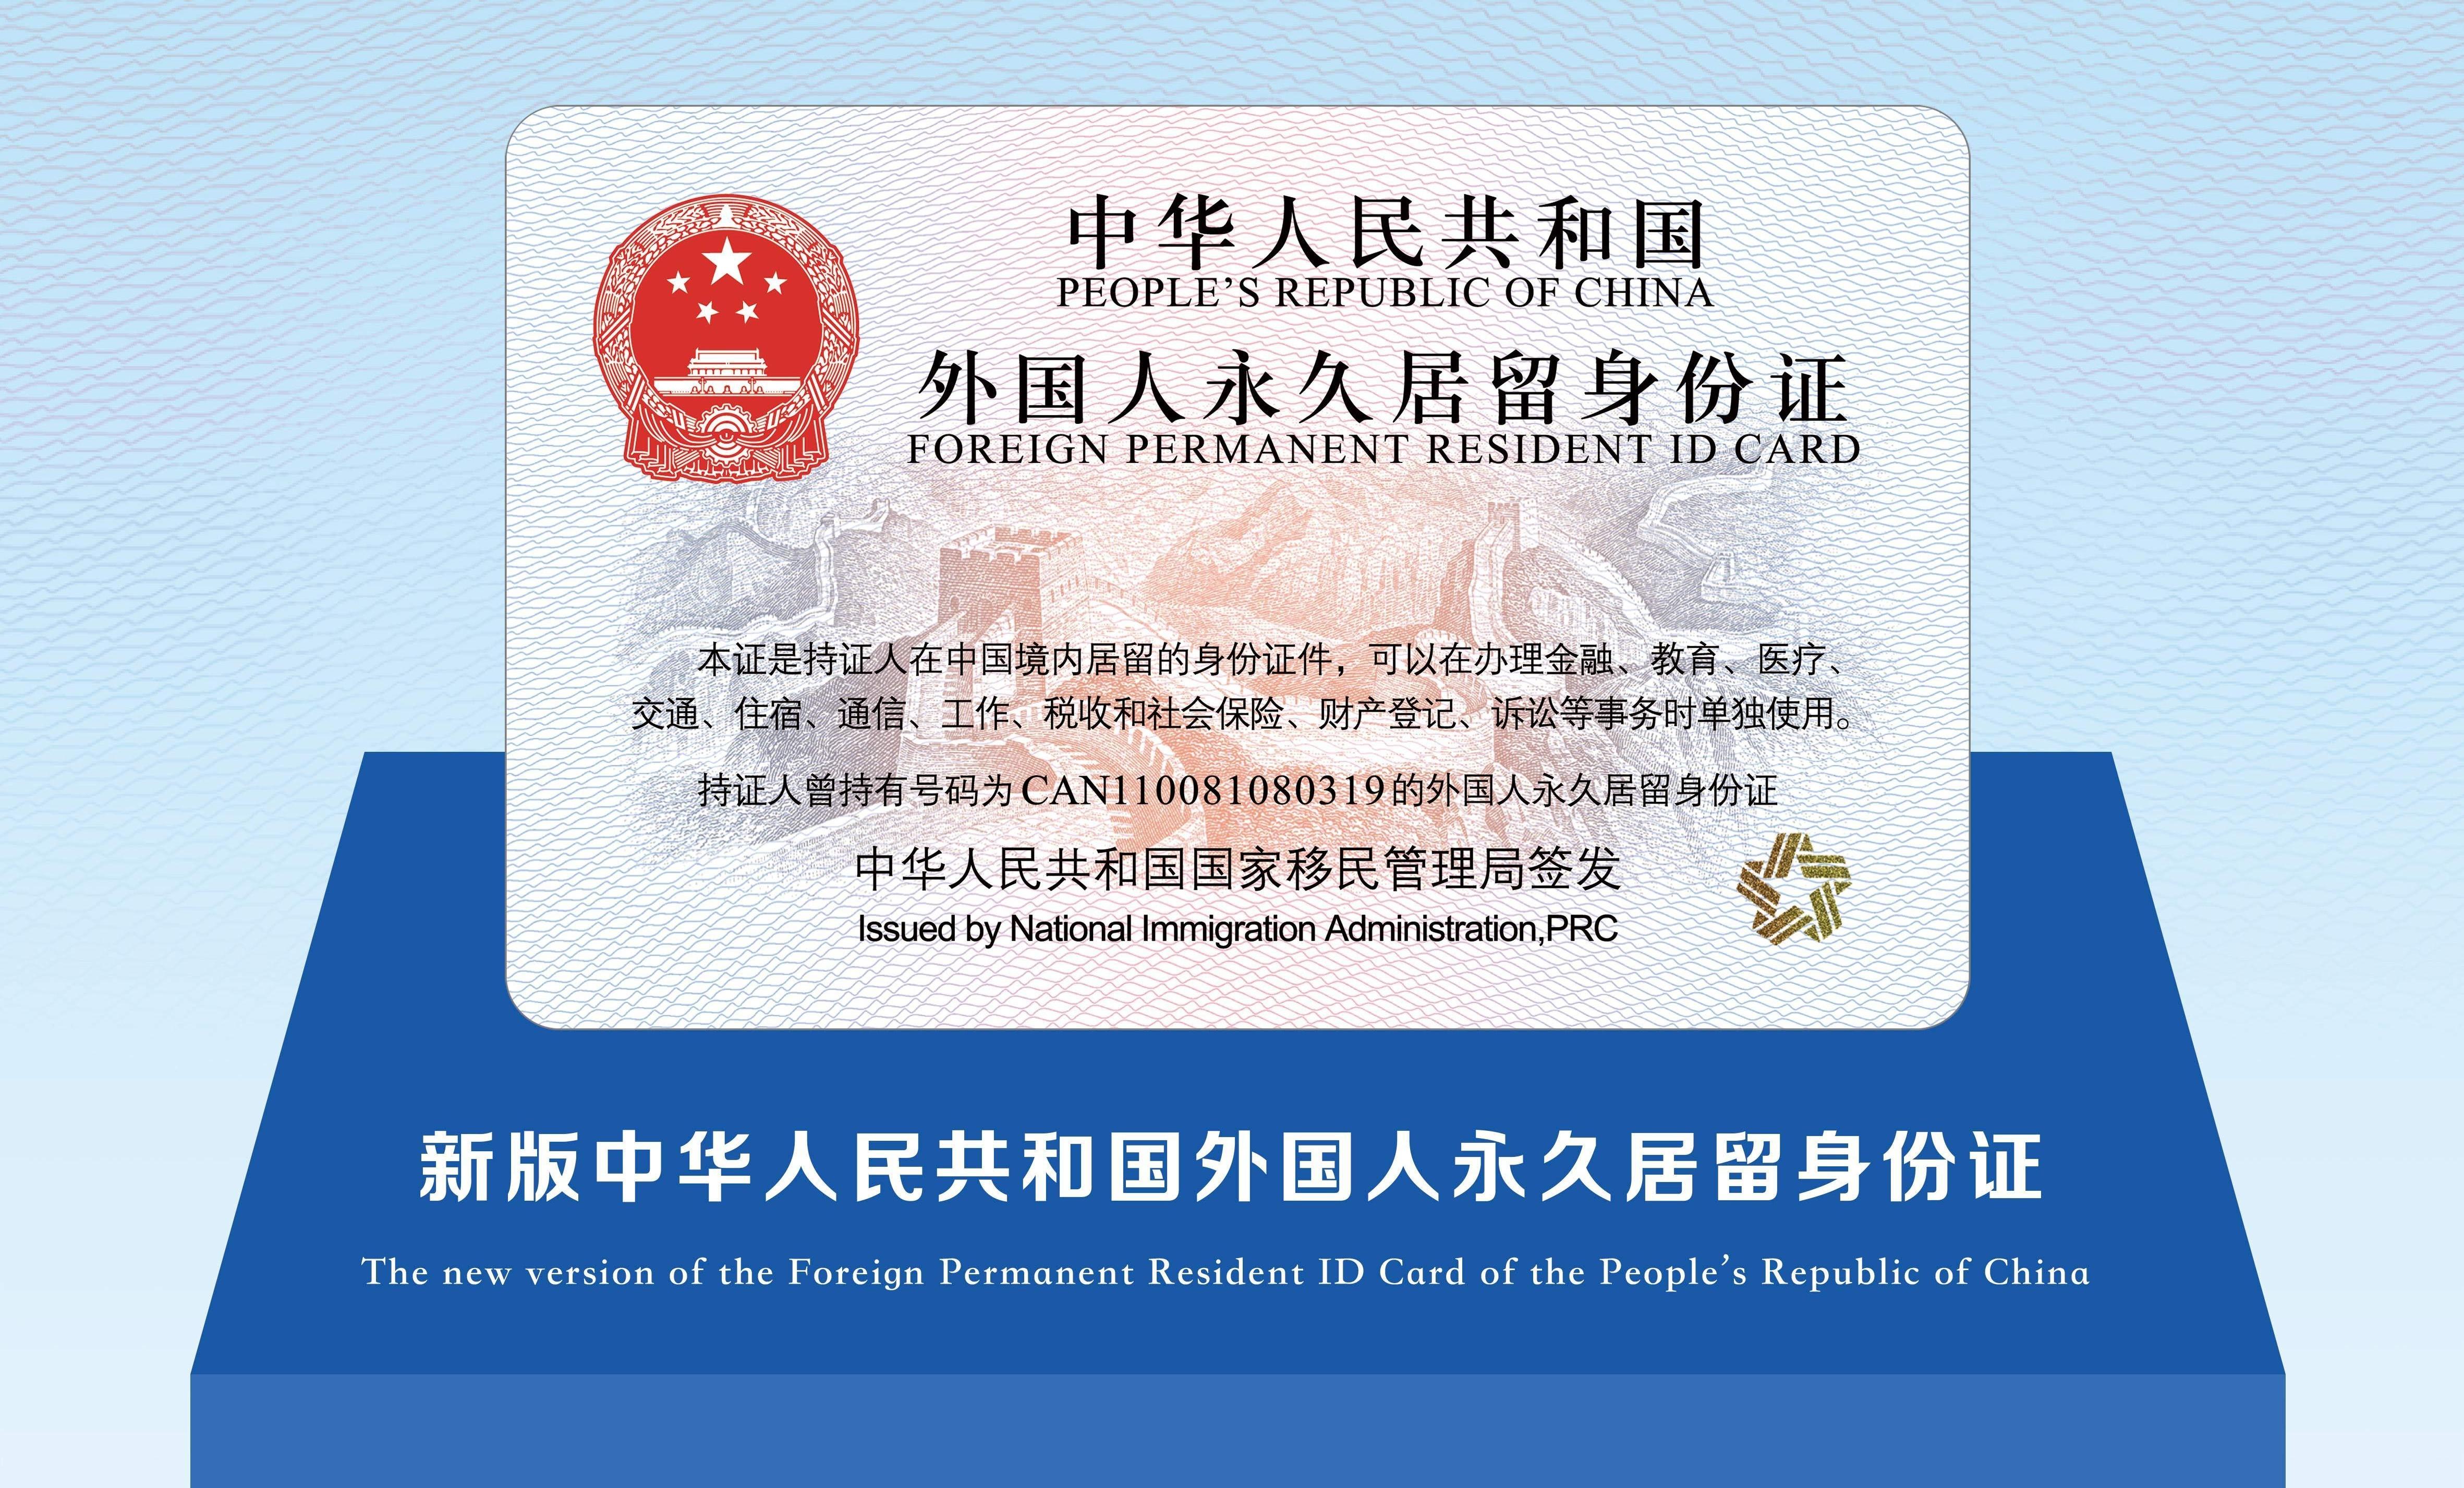 “五星卡”签发启用 首日50人领取新版外国人永久居留身份证